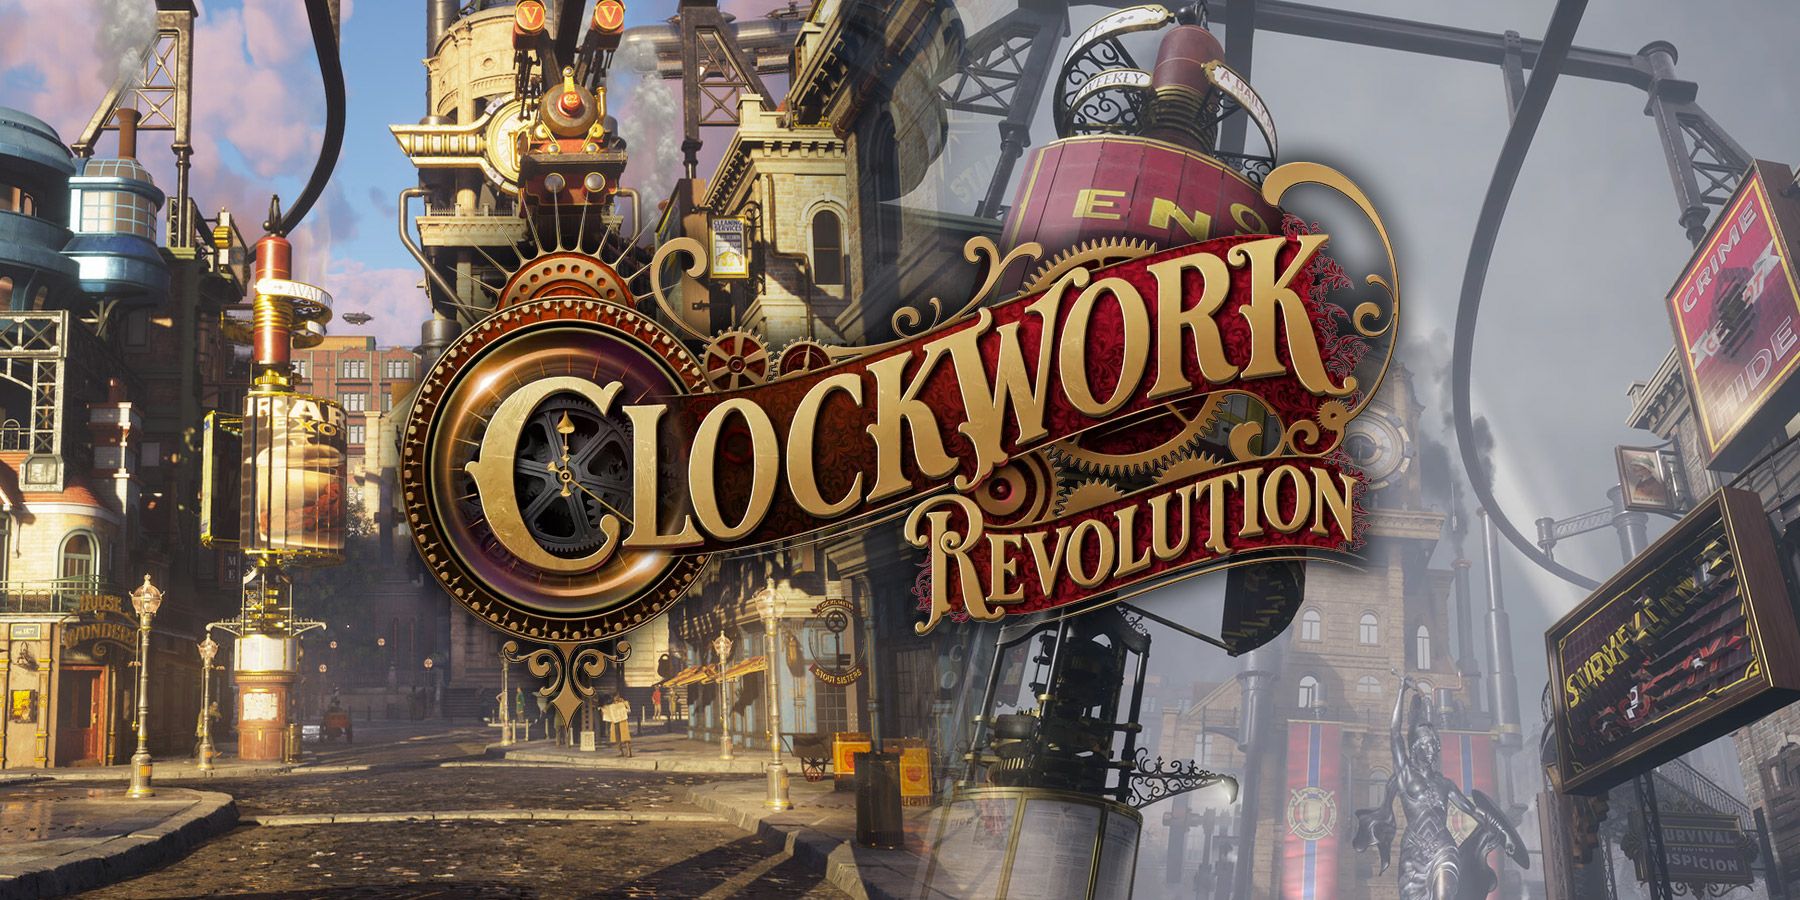 Clockwork Revolution Setting